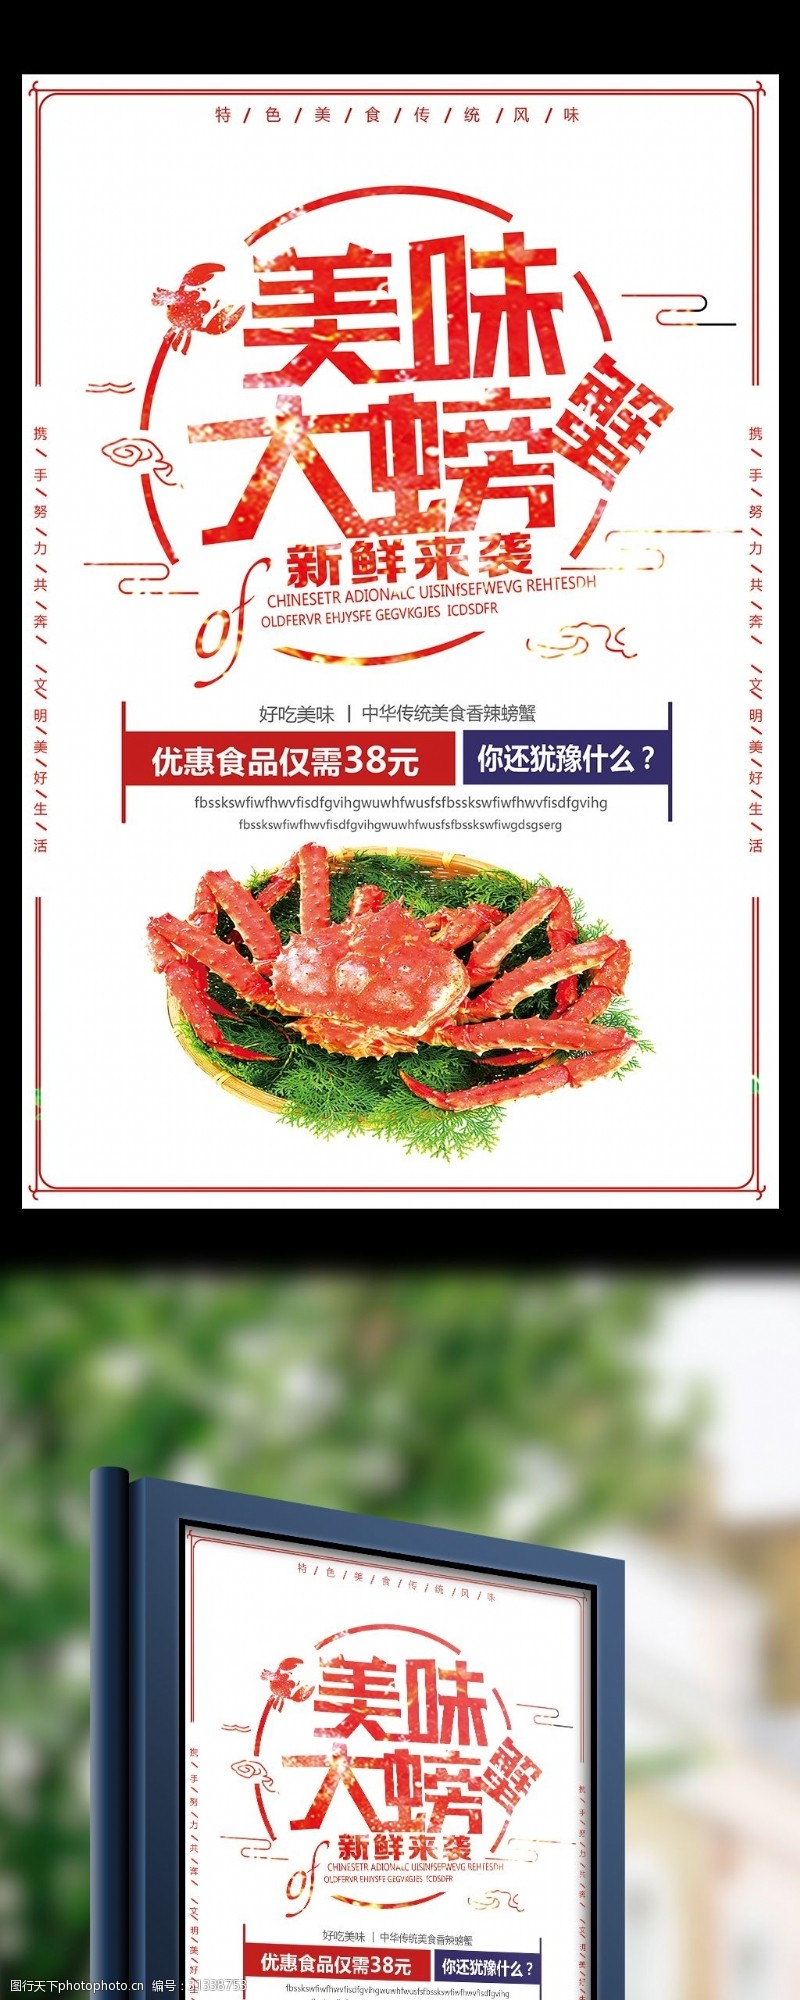 螃蟹宣传新鲜美味大螃蟹优惠促销海报